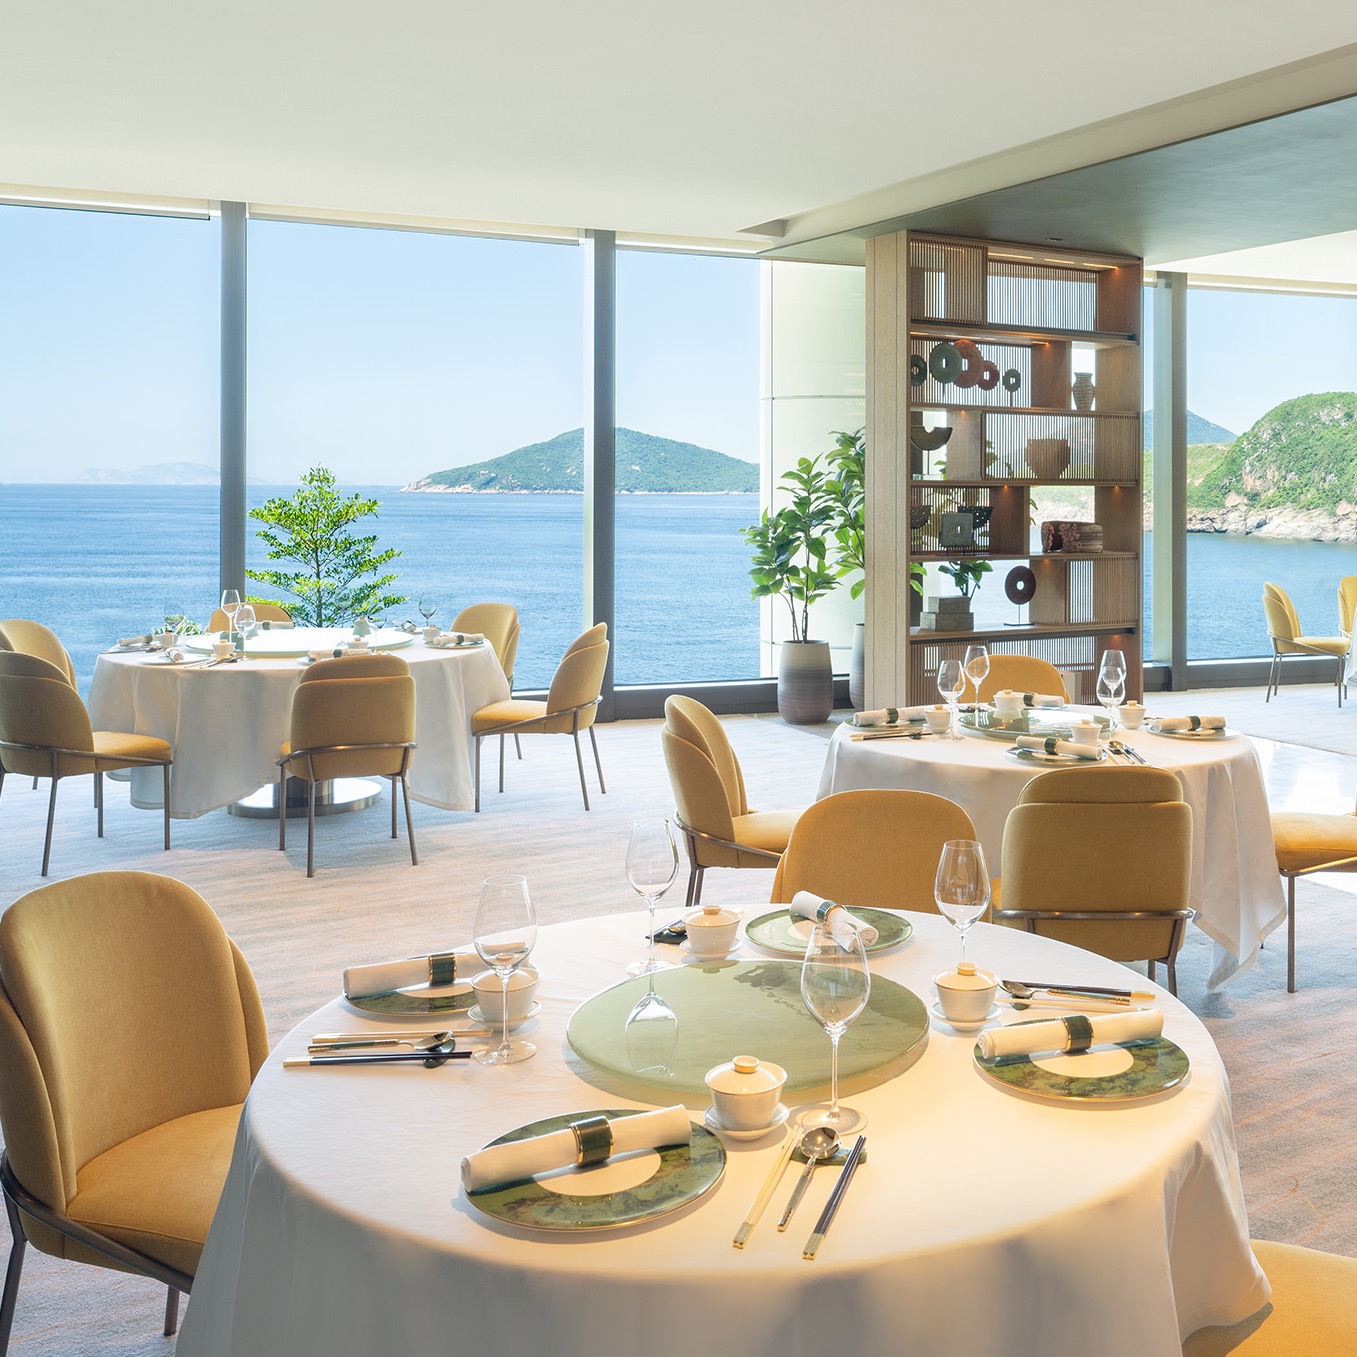 香港富丽敦海洋公园酒店呈献标志性的中菜厅「玉」 打造南岸海滨美食集中地